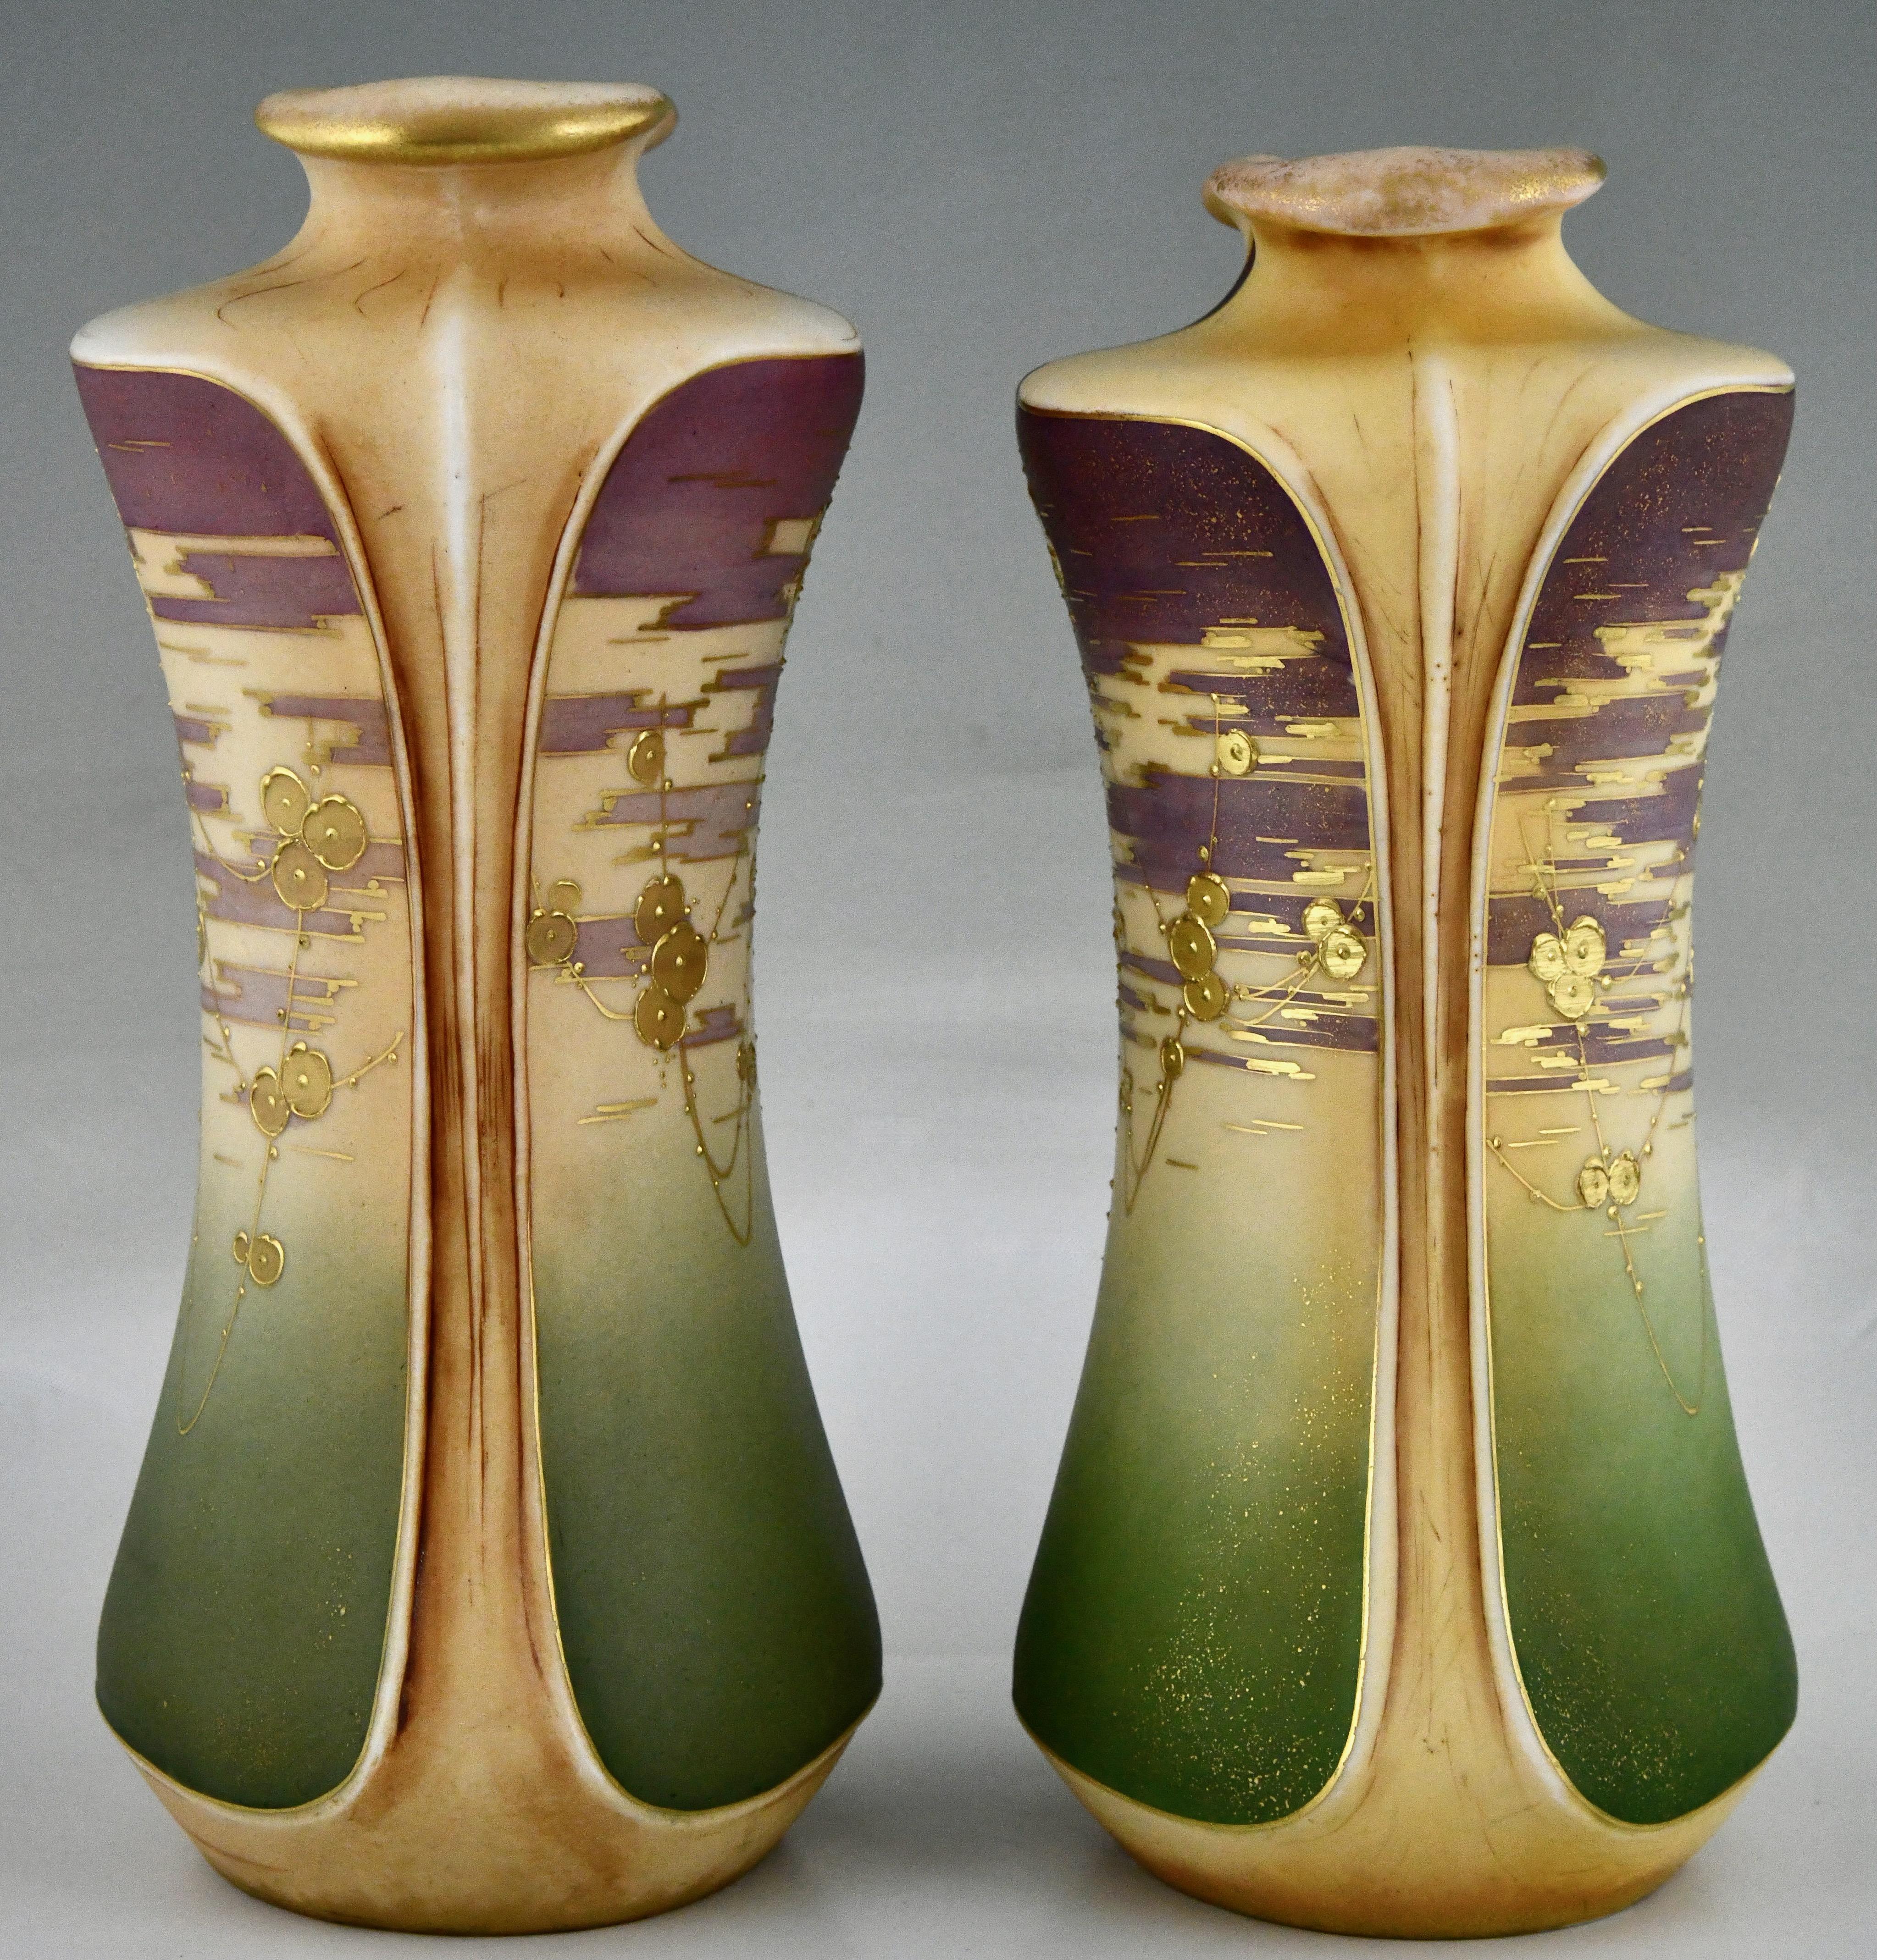 Autrichien Vases en céramique Art nouveau avec fleurs dorées par Turn Teplitz Amphora Autriche 1900 en vente